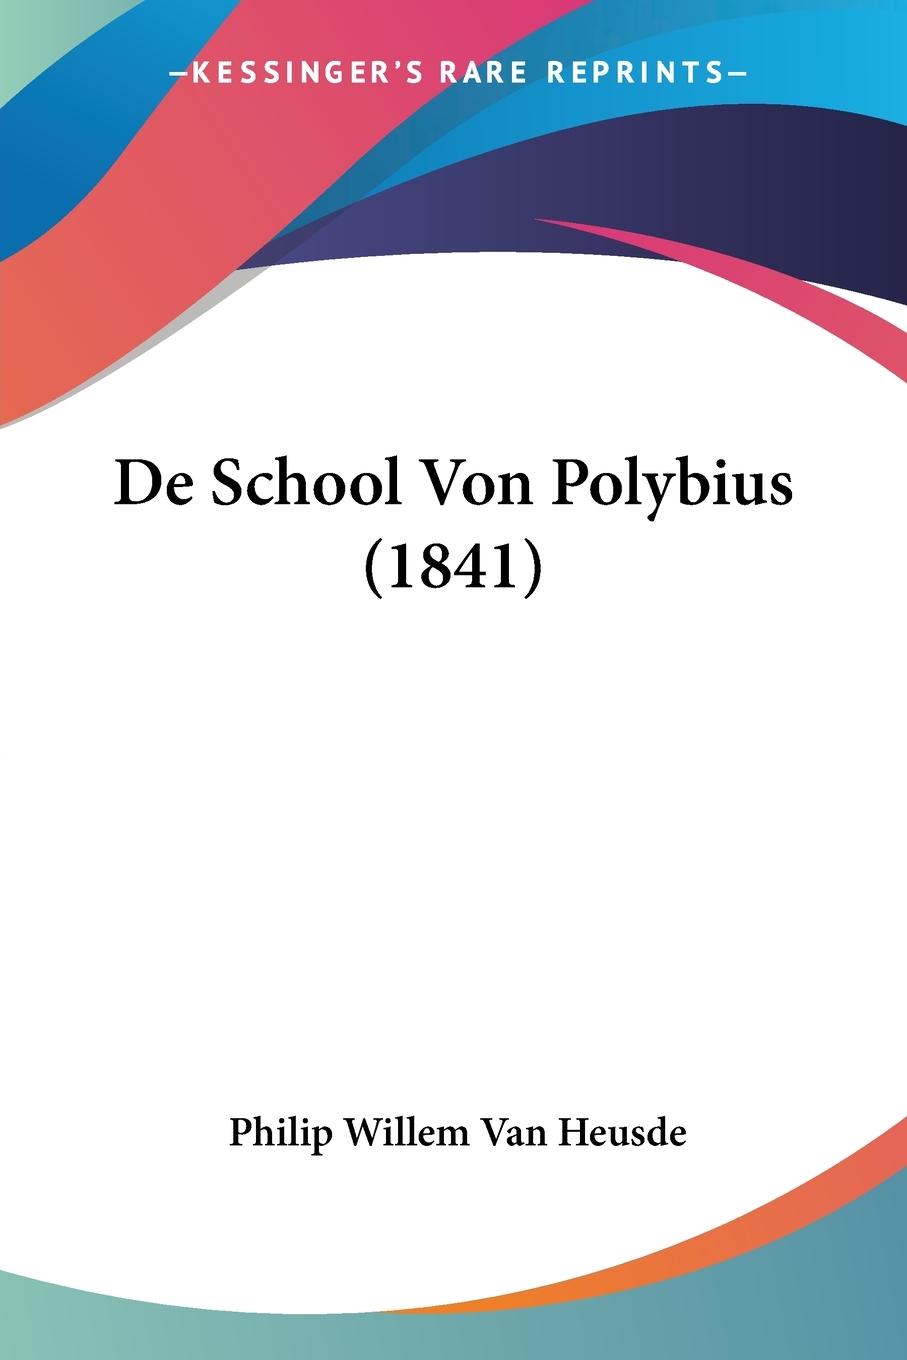 De School Von Polybius (1841) - Heusde, Philip Willem van